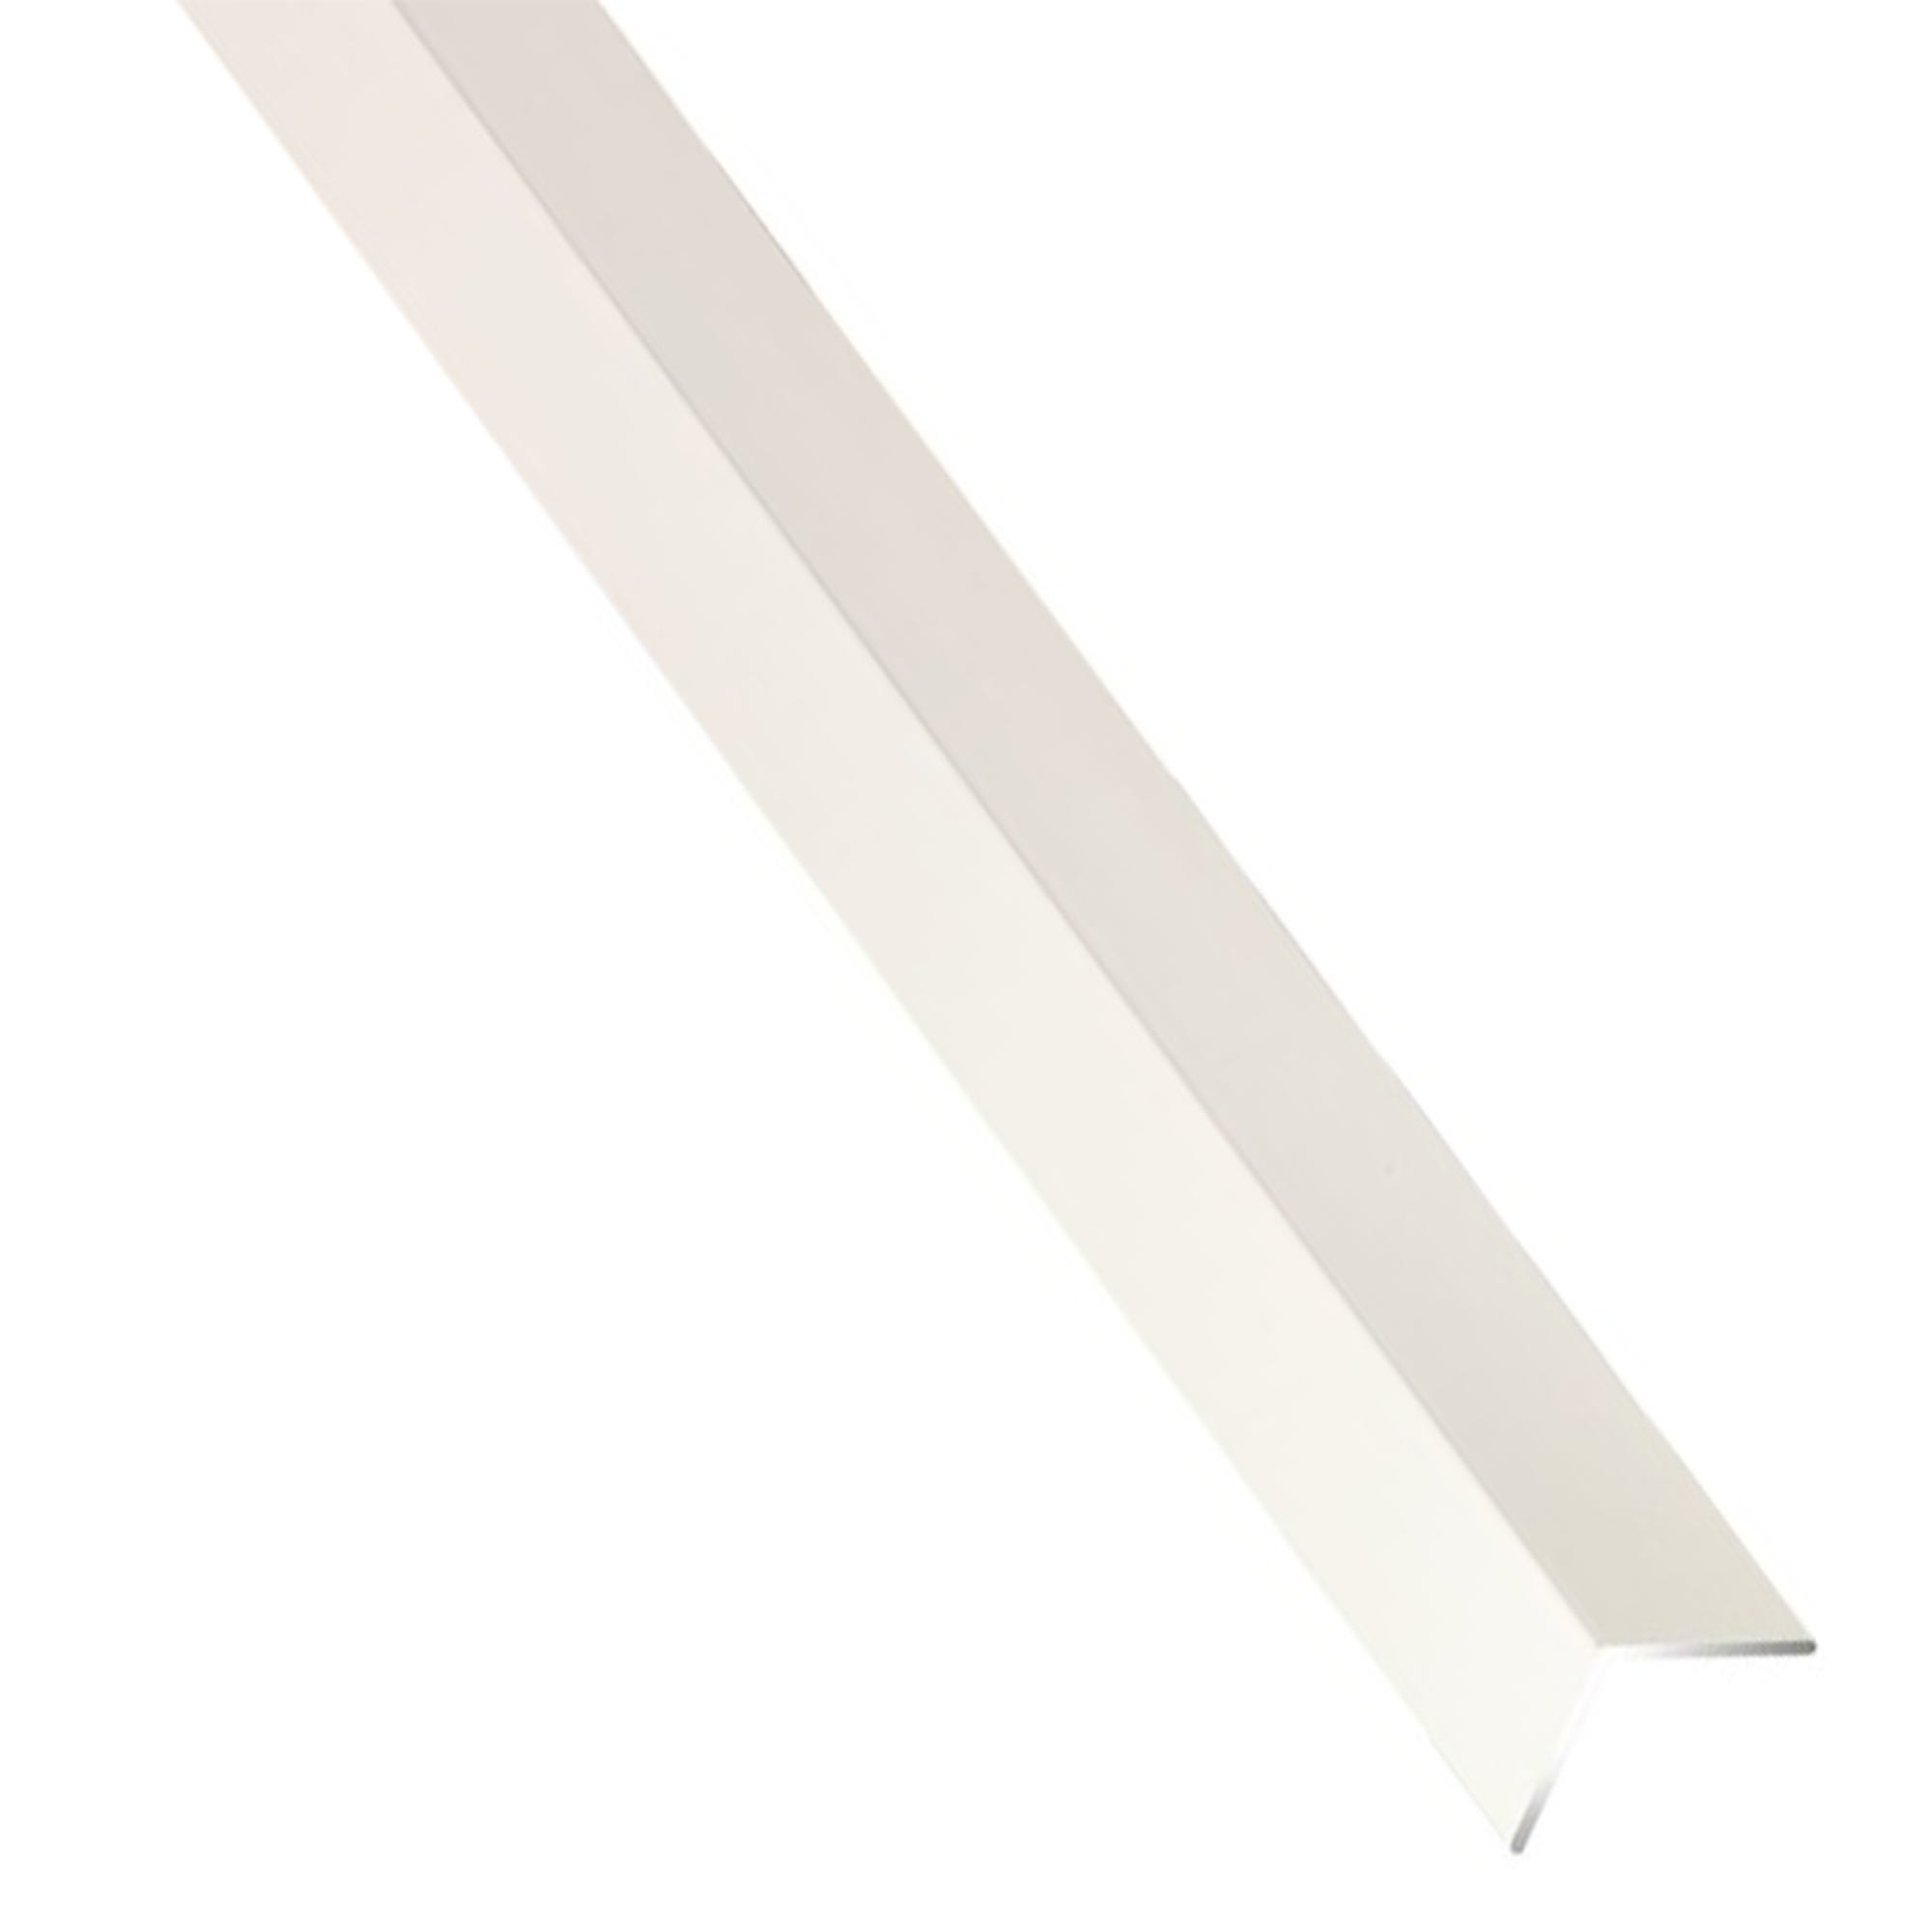 Cornière pvc - Finition : Blanc - Longueur : 2600 mm - Matériau